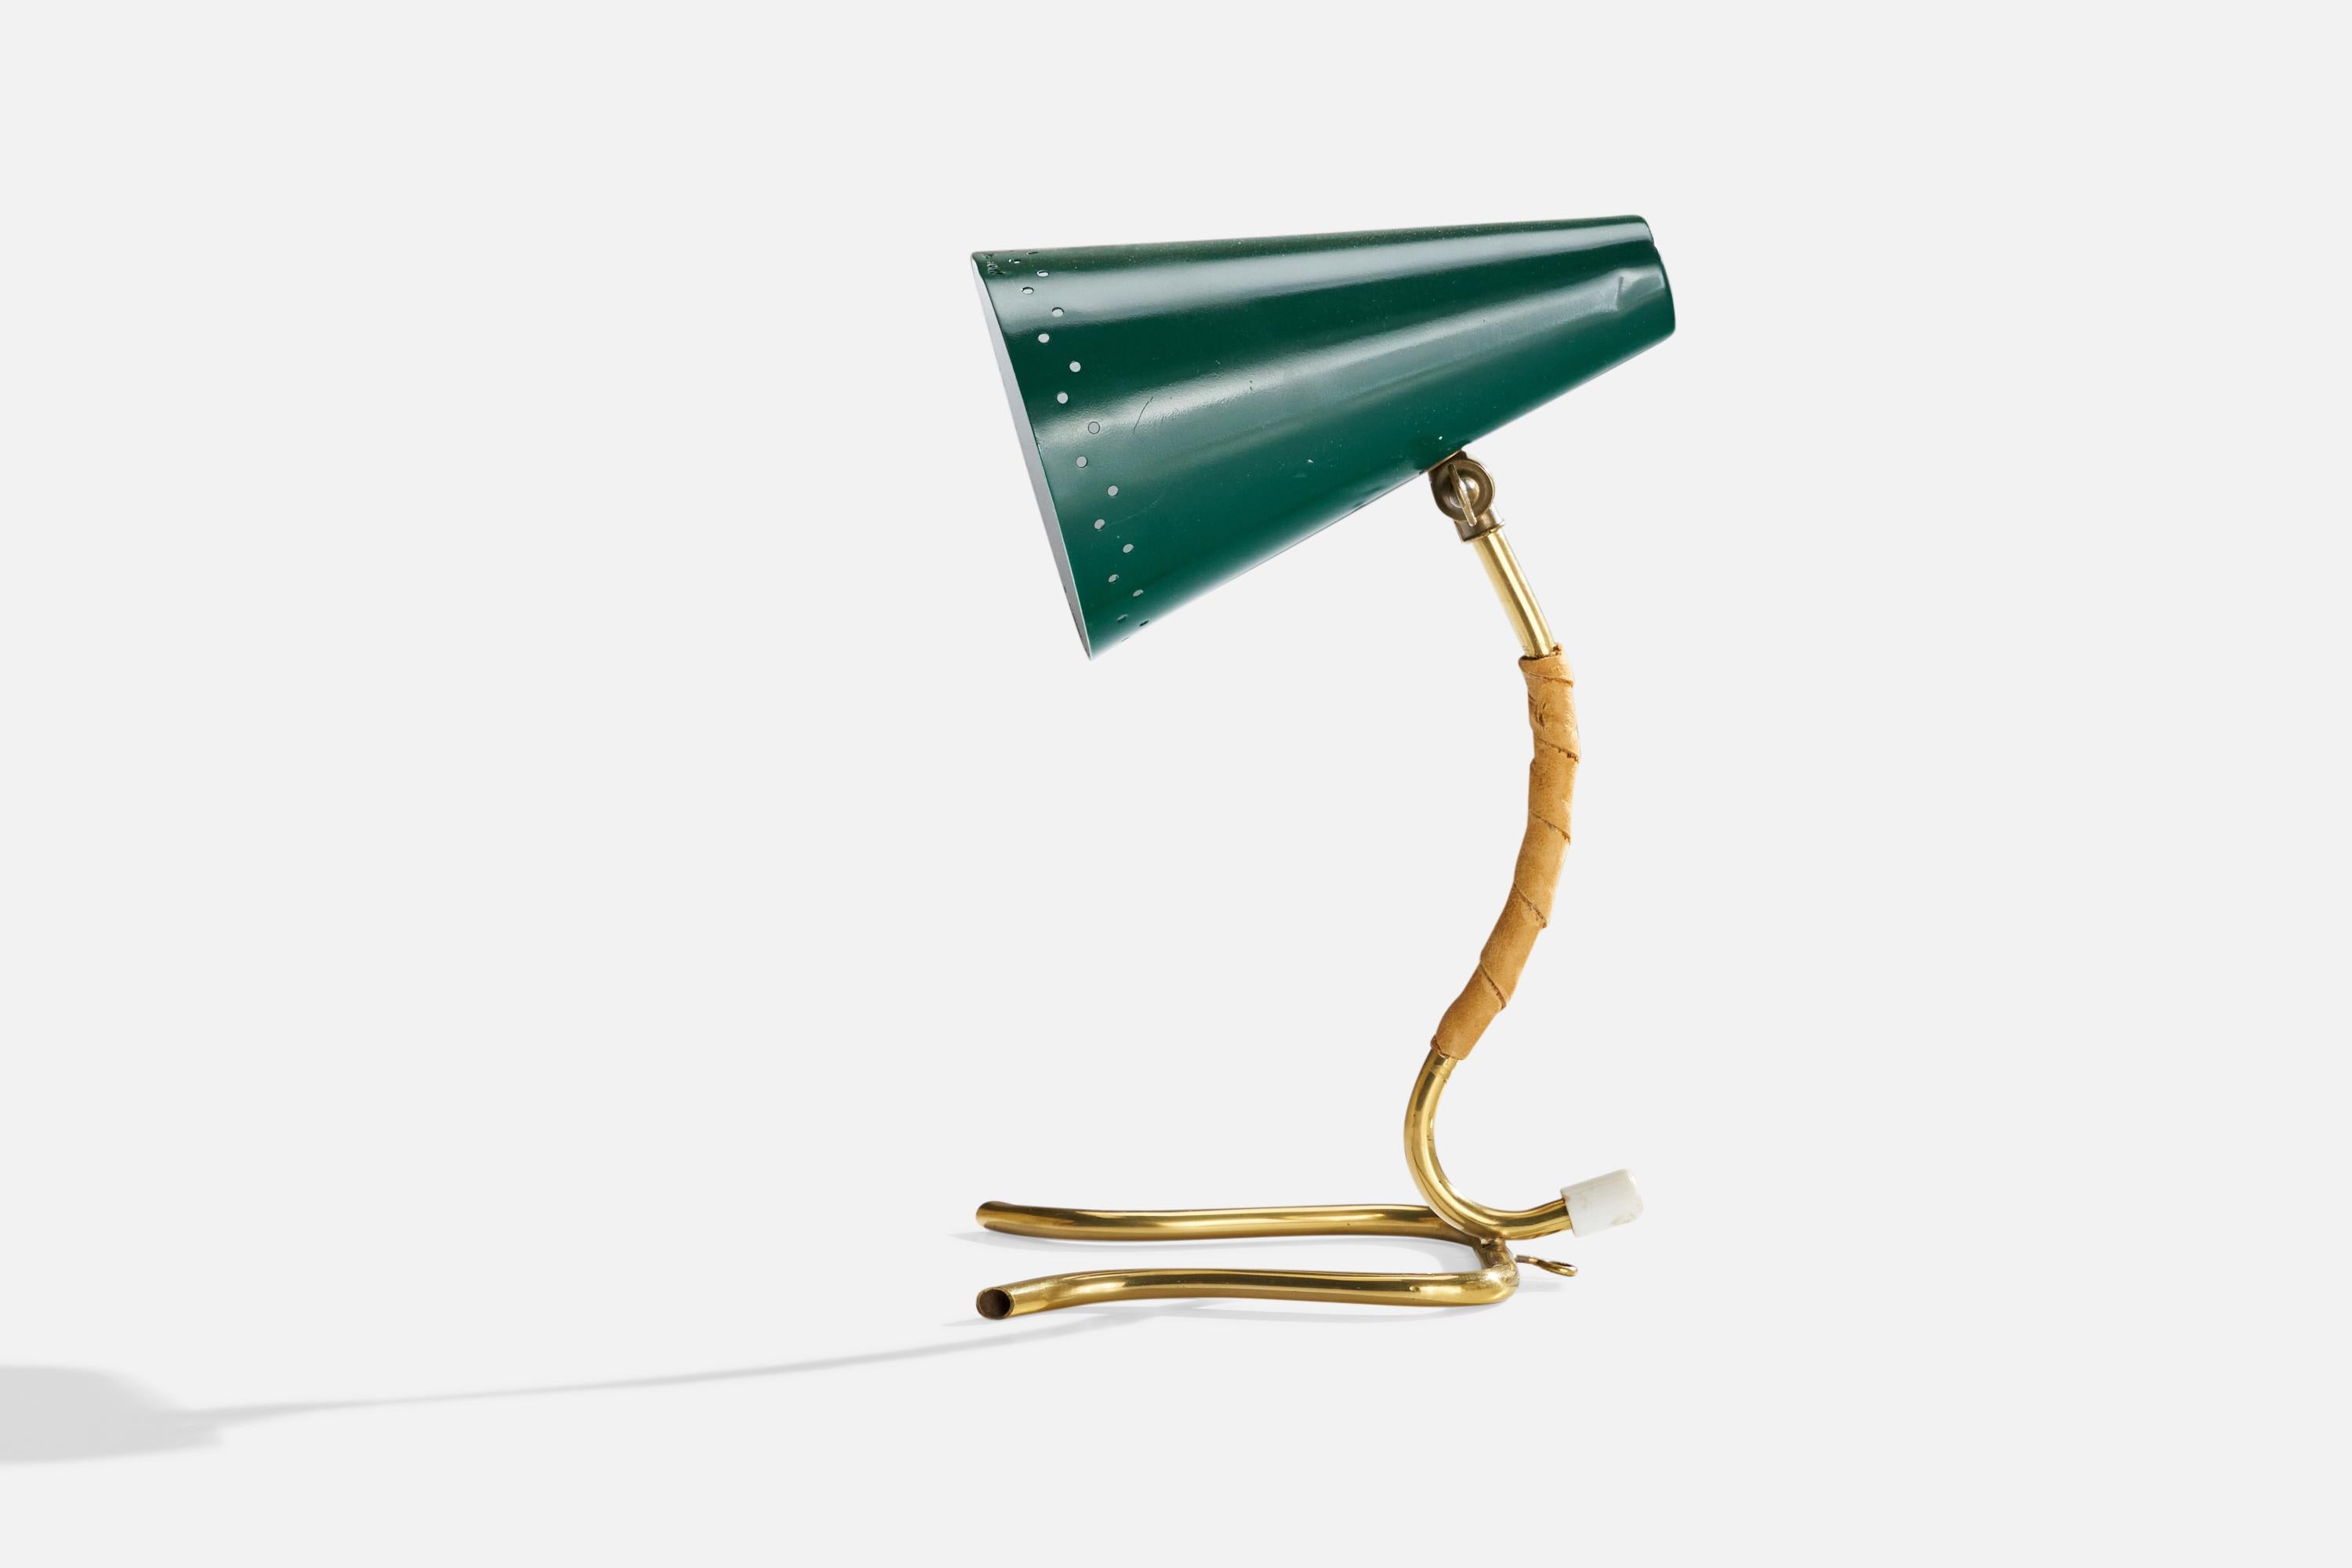 Lampe de table réglable en laiton, cuir et laque verte, conçue et produite en Suède, années 1950.

Dimensions globales (pouces) : 12.5